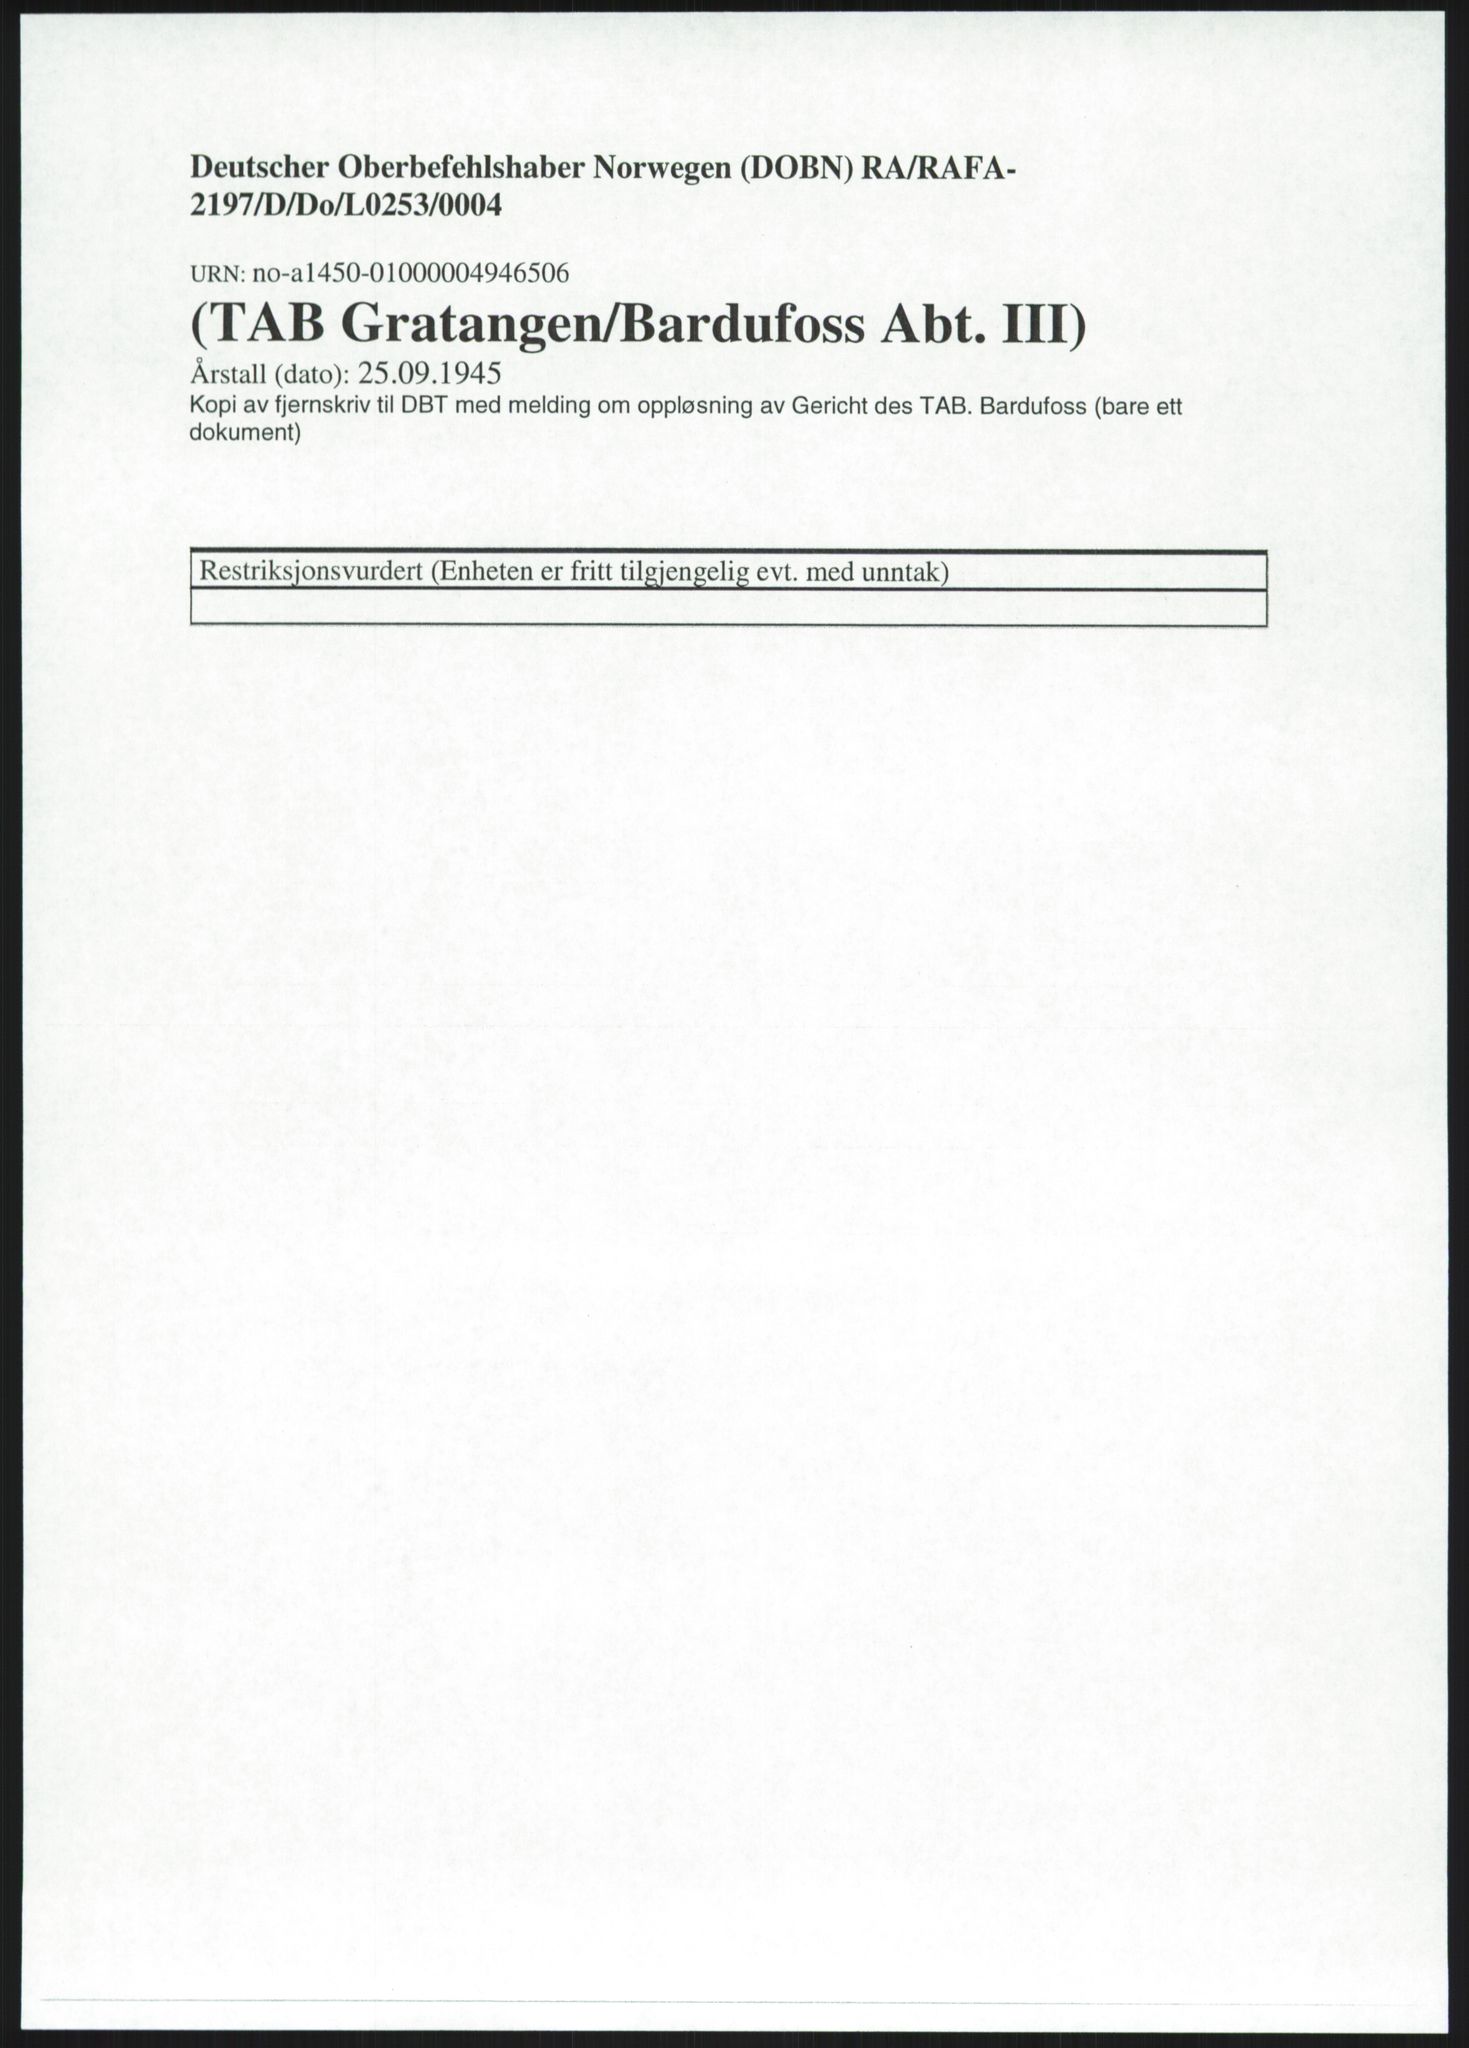 Deutscher Oberbefehlshaber Norwegen (DOBN), RA/RAFA-2197/D/Do/L0253/0004: TAB Gratangen/Bardufoss / (TAB Gratangen/Bardufoss Abt. III), 1945